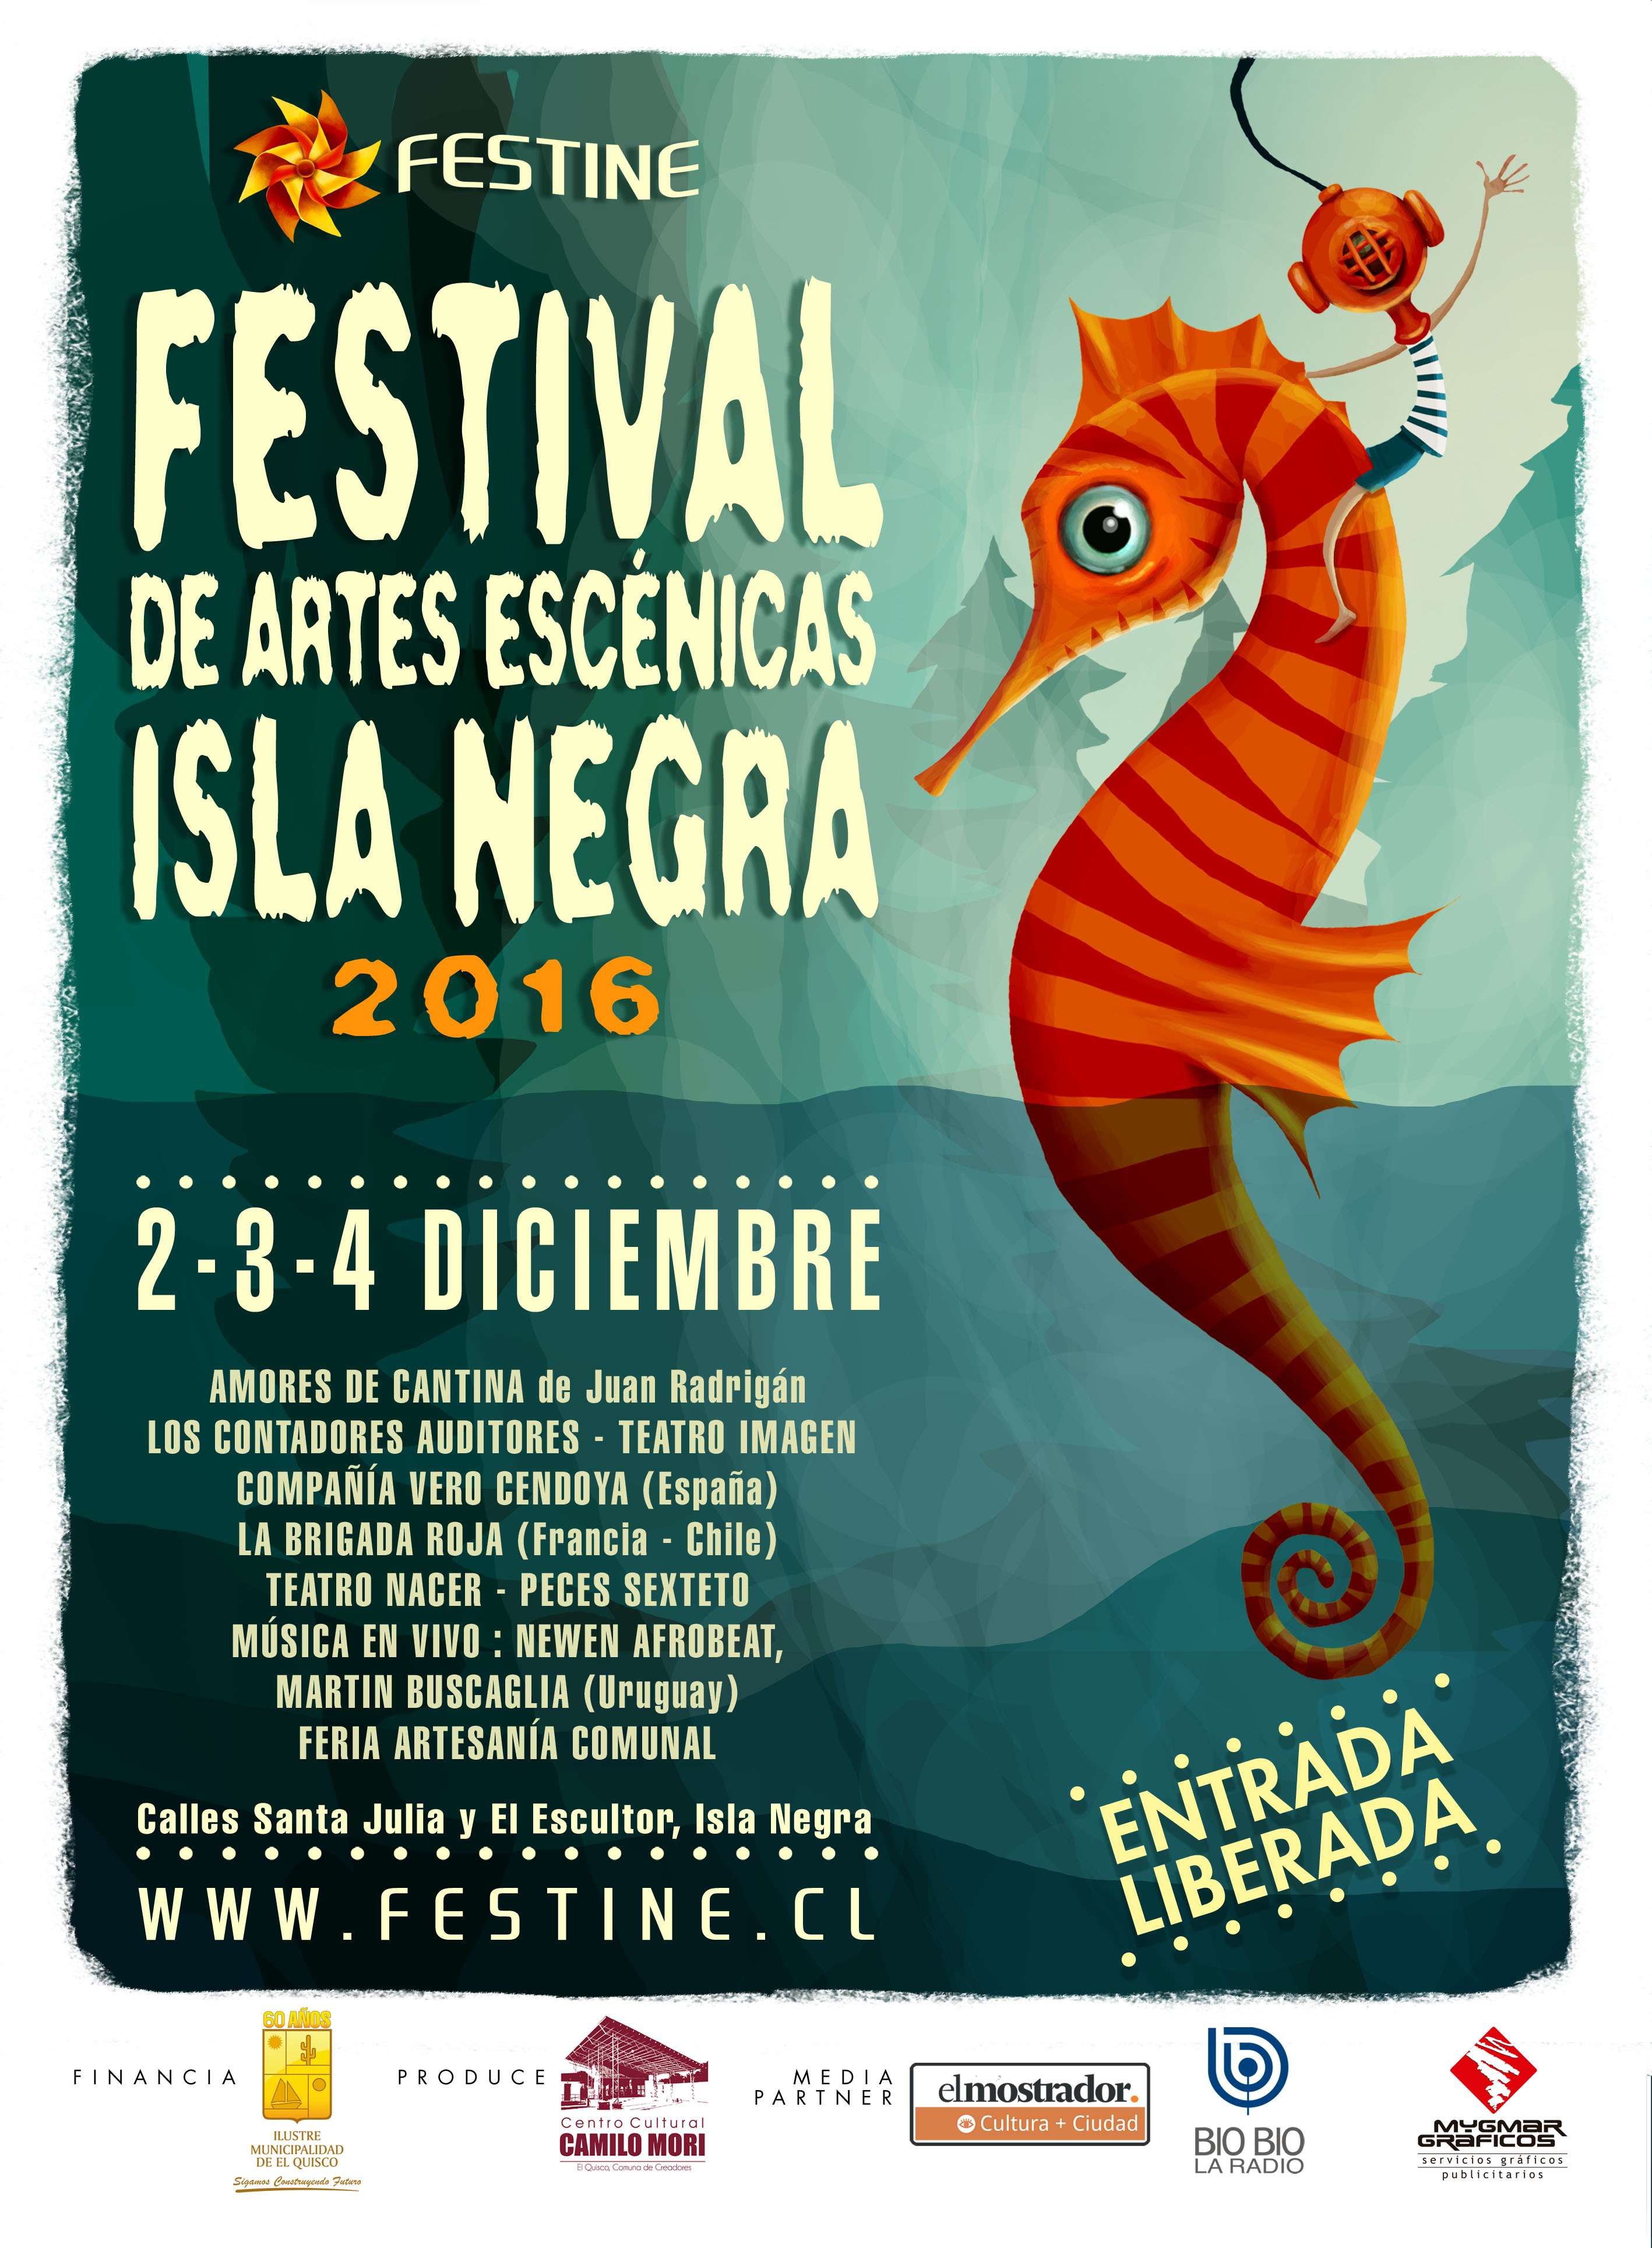 Festival de Artes Escénicas de Isla Negra tendrá invitados internacionales y una carpa con música en vivo